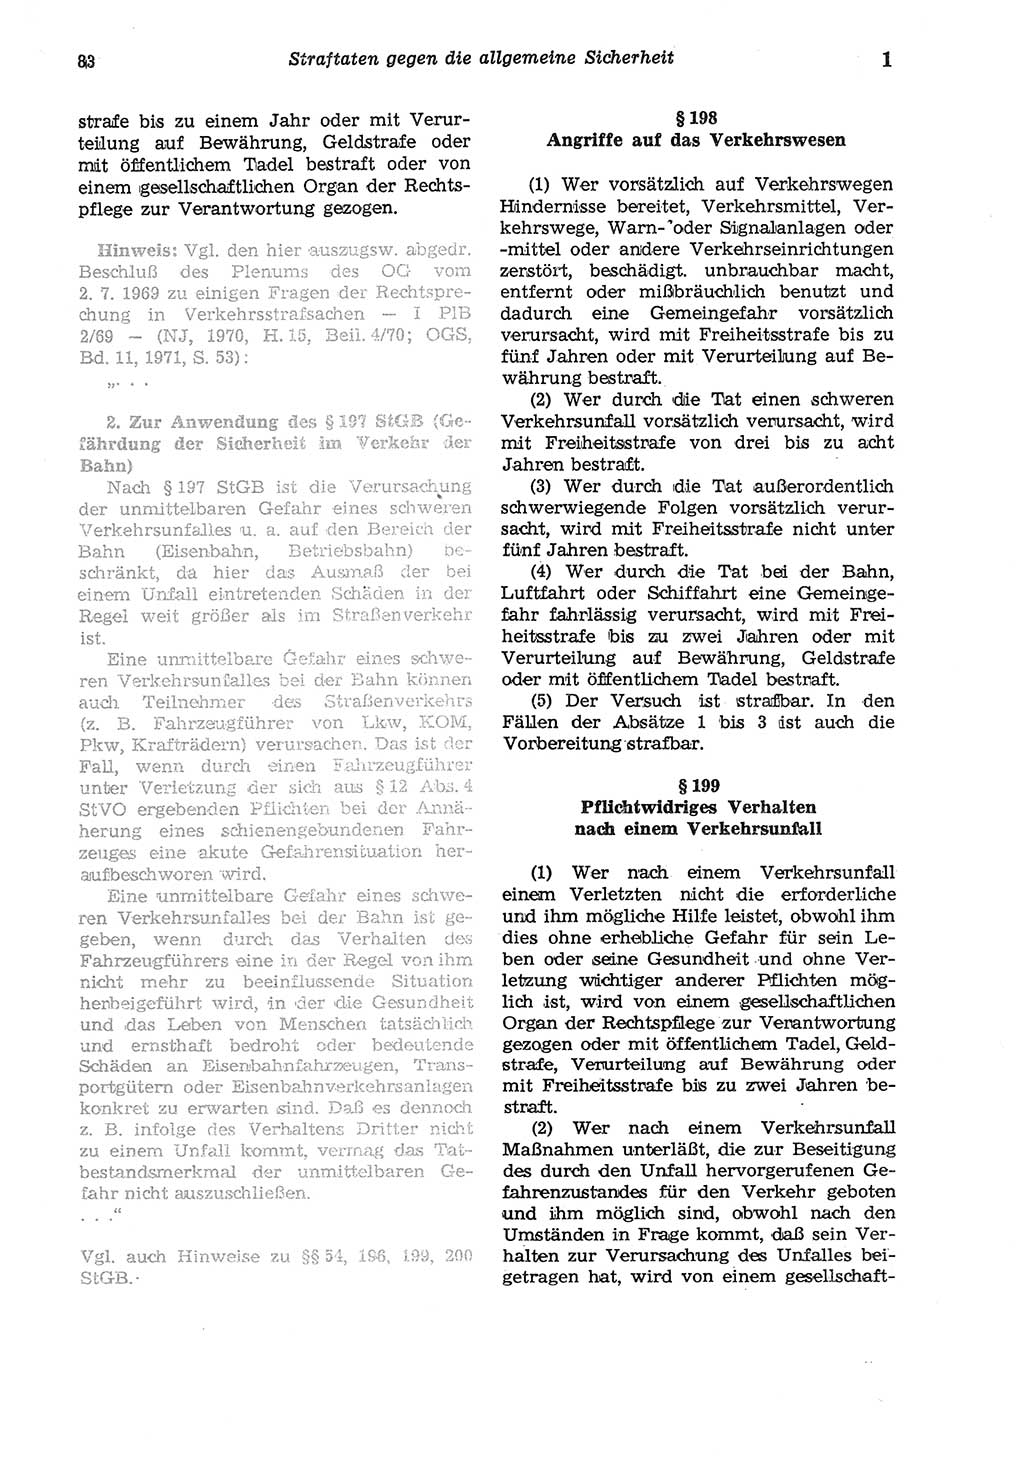 Strafgesetzbuch (StGB) der Deutschen Demokratischen Republik (DDR) und angrenzende Gesetze und Bestimmungen 1975, Seite 83 (StGB DDR Ges. Best. 1975, S. 83)